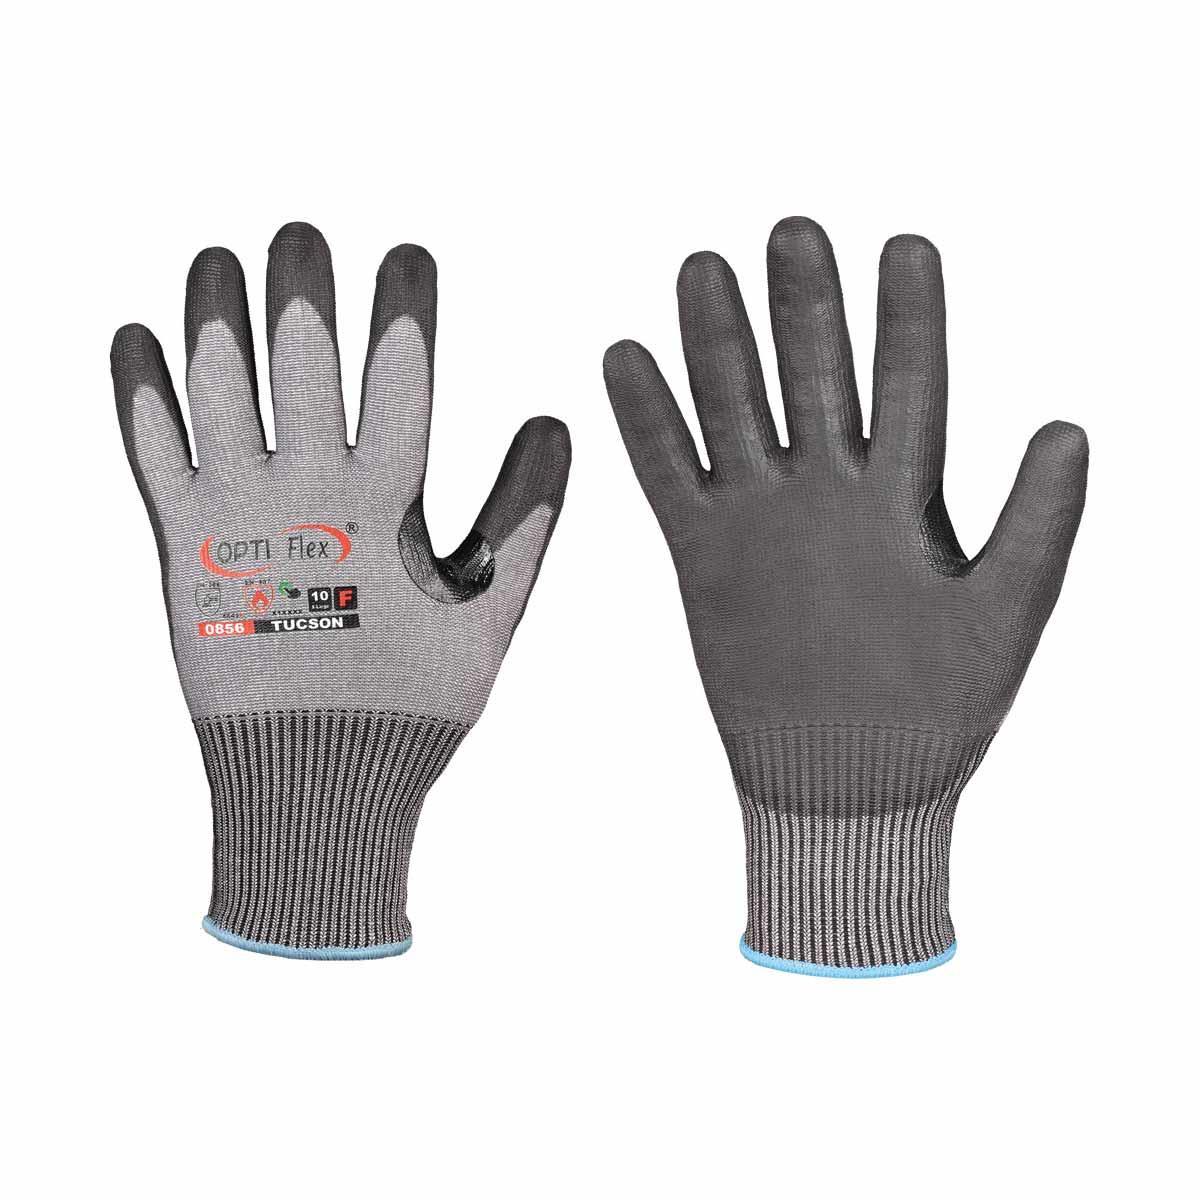 Schnittschutz Tucson OPTI Flex® Handschuh Gr. 9